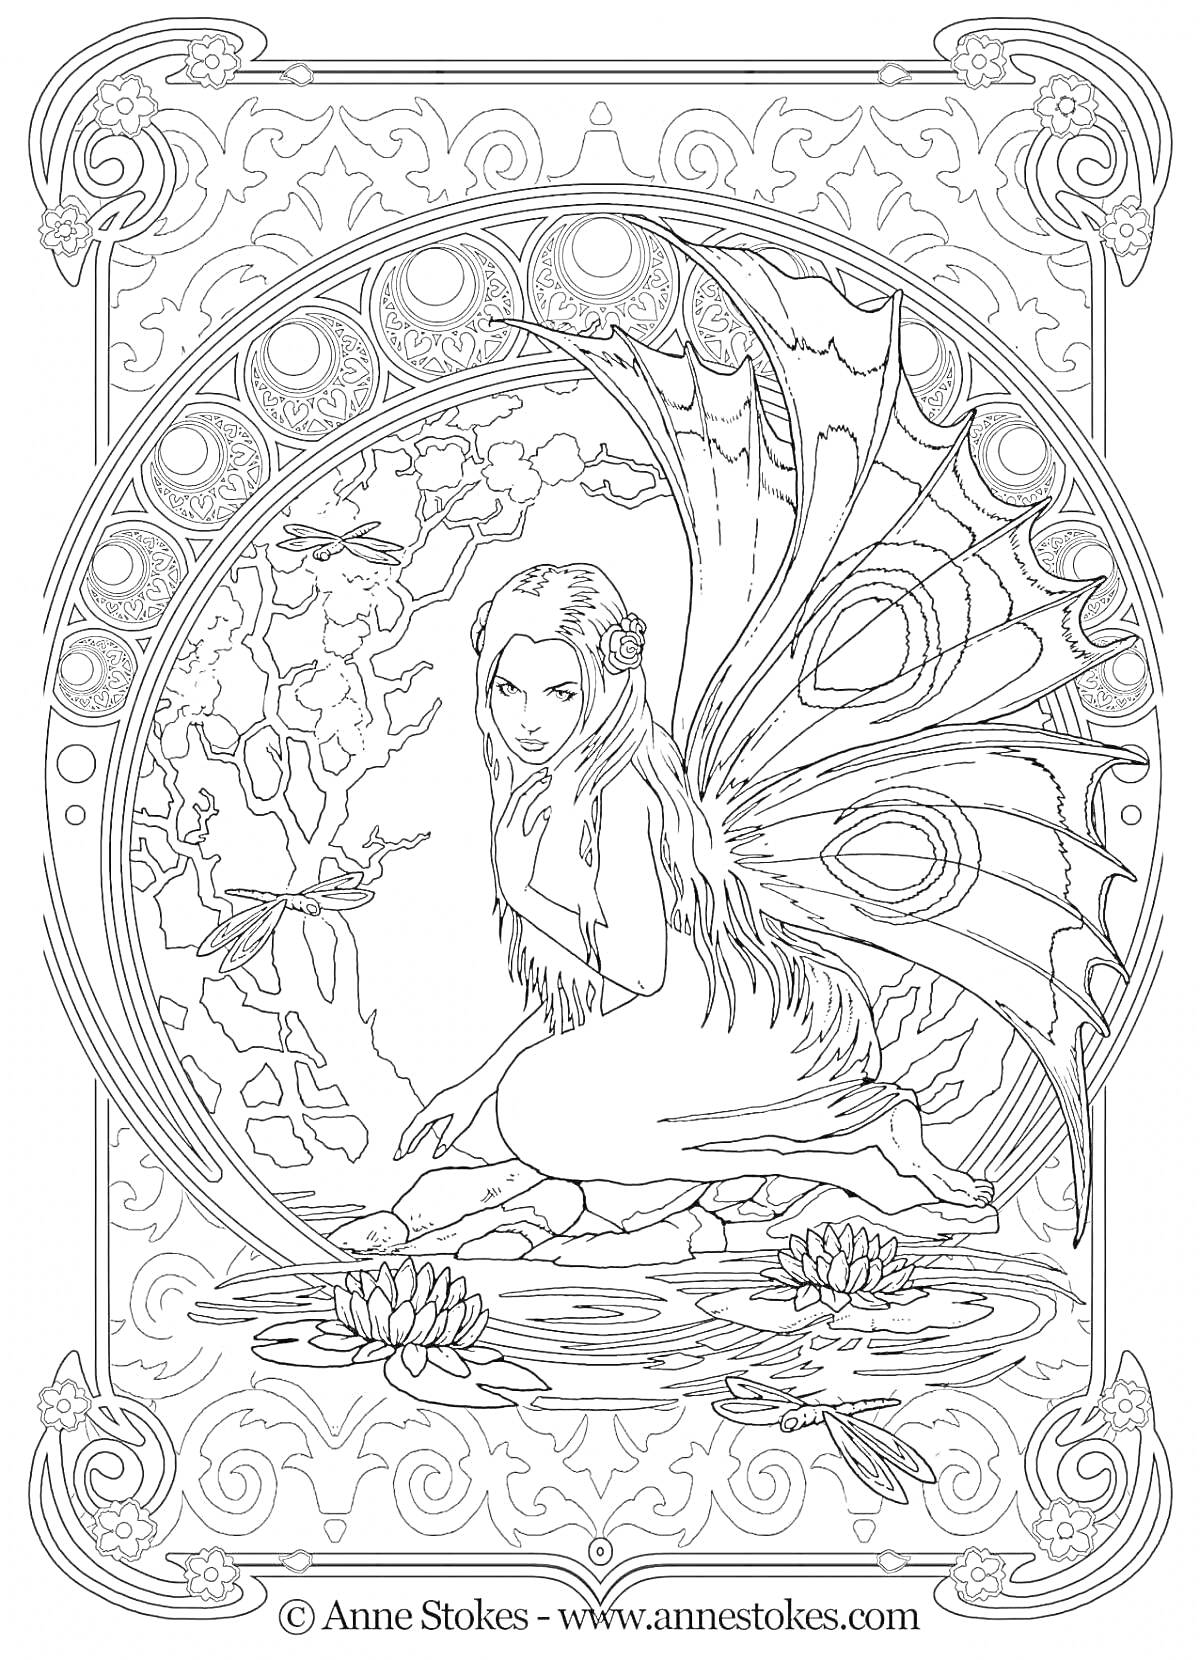 Раскраска Фея у пруда с водяными лилиями, окруженная деревьями и декоративной рамкой